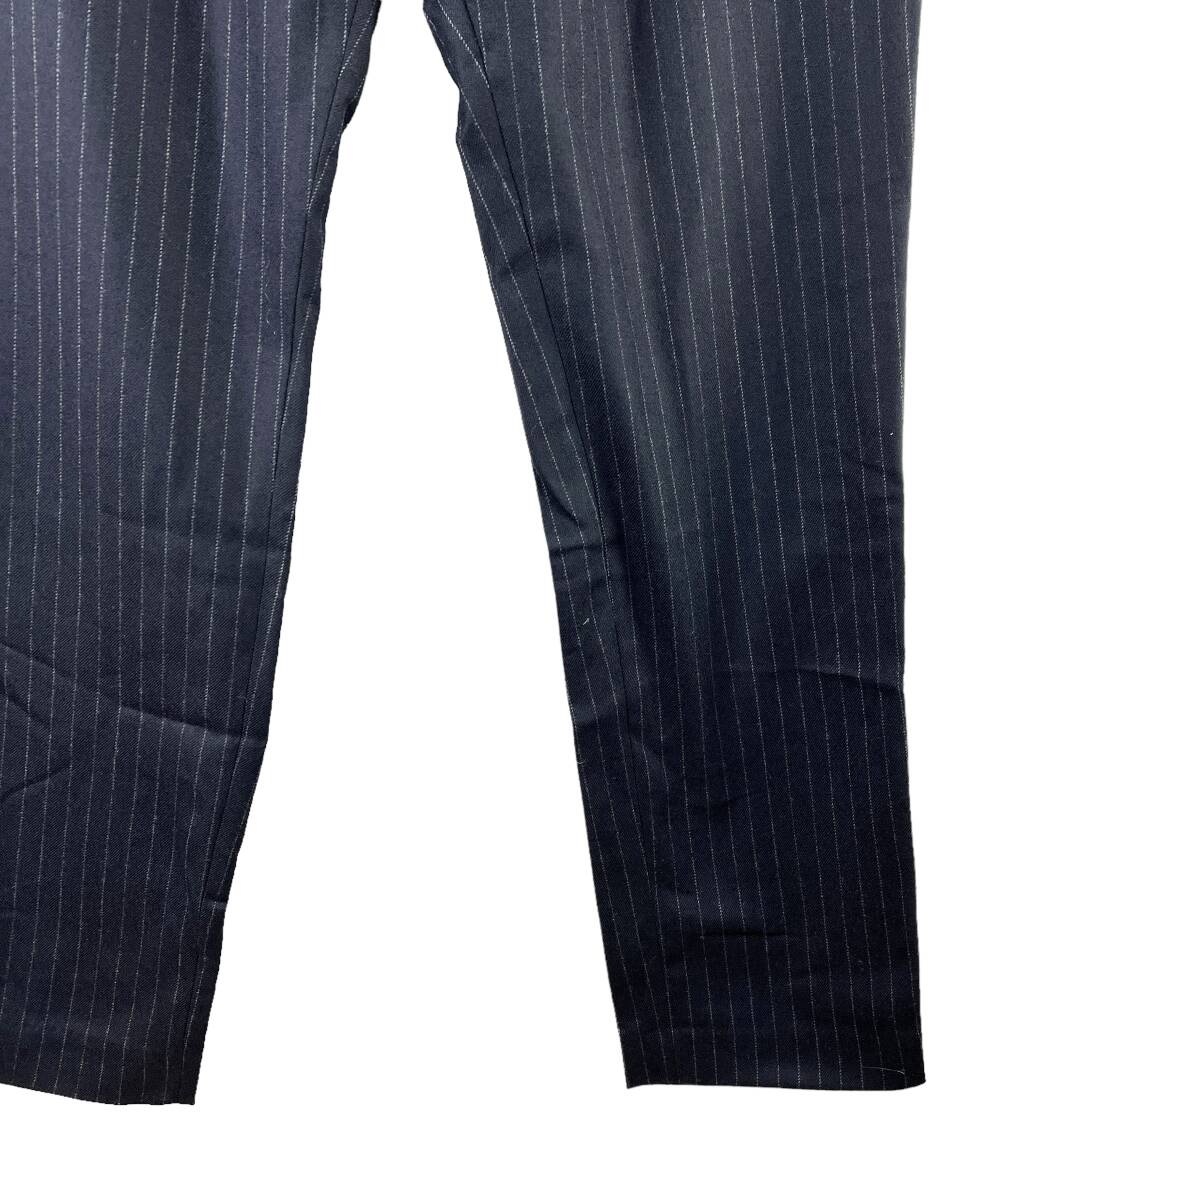 LA KAGU(ラカグ) Stripe Design Wool Long Pants (black)